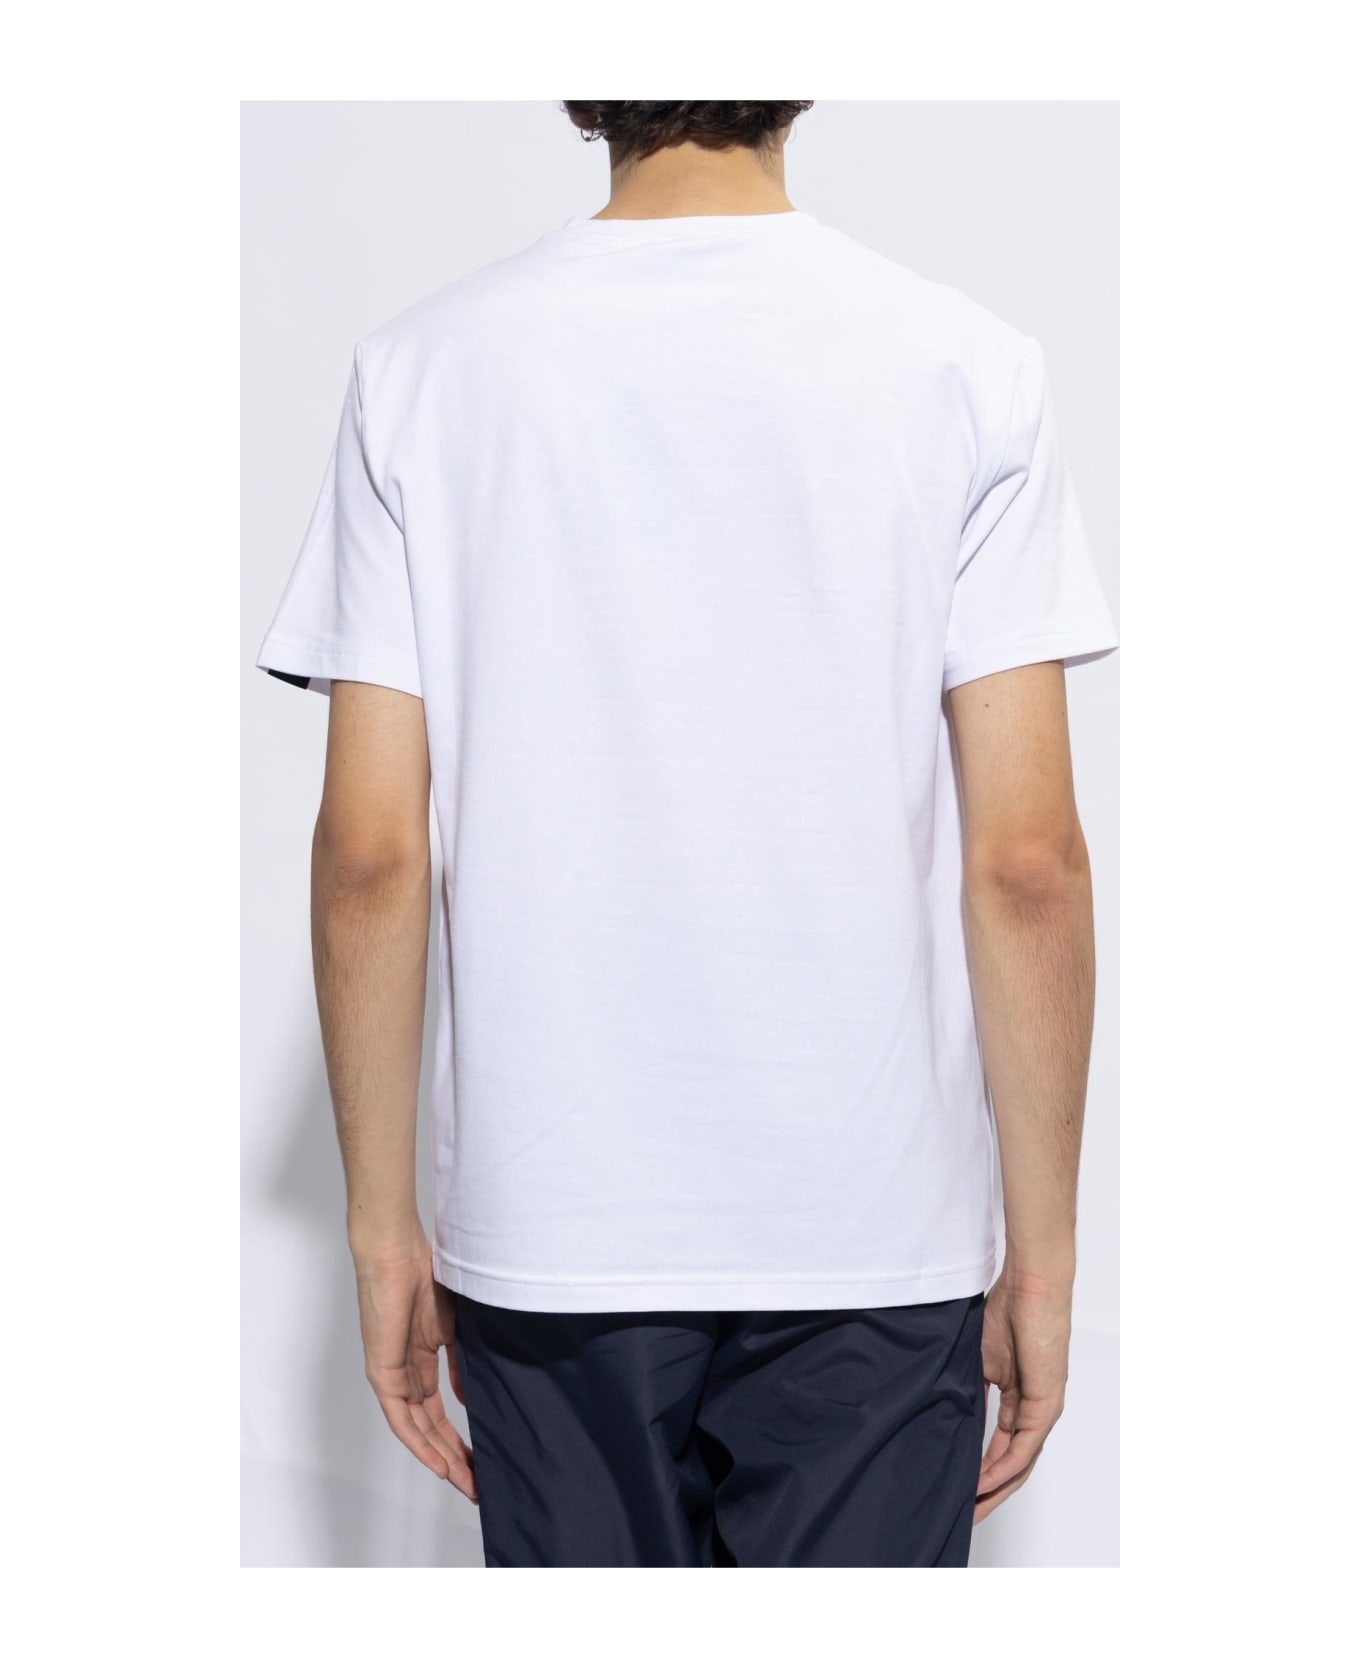 EA7 Emporio Armani T-shirt With Logo - White シャツ